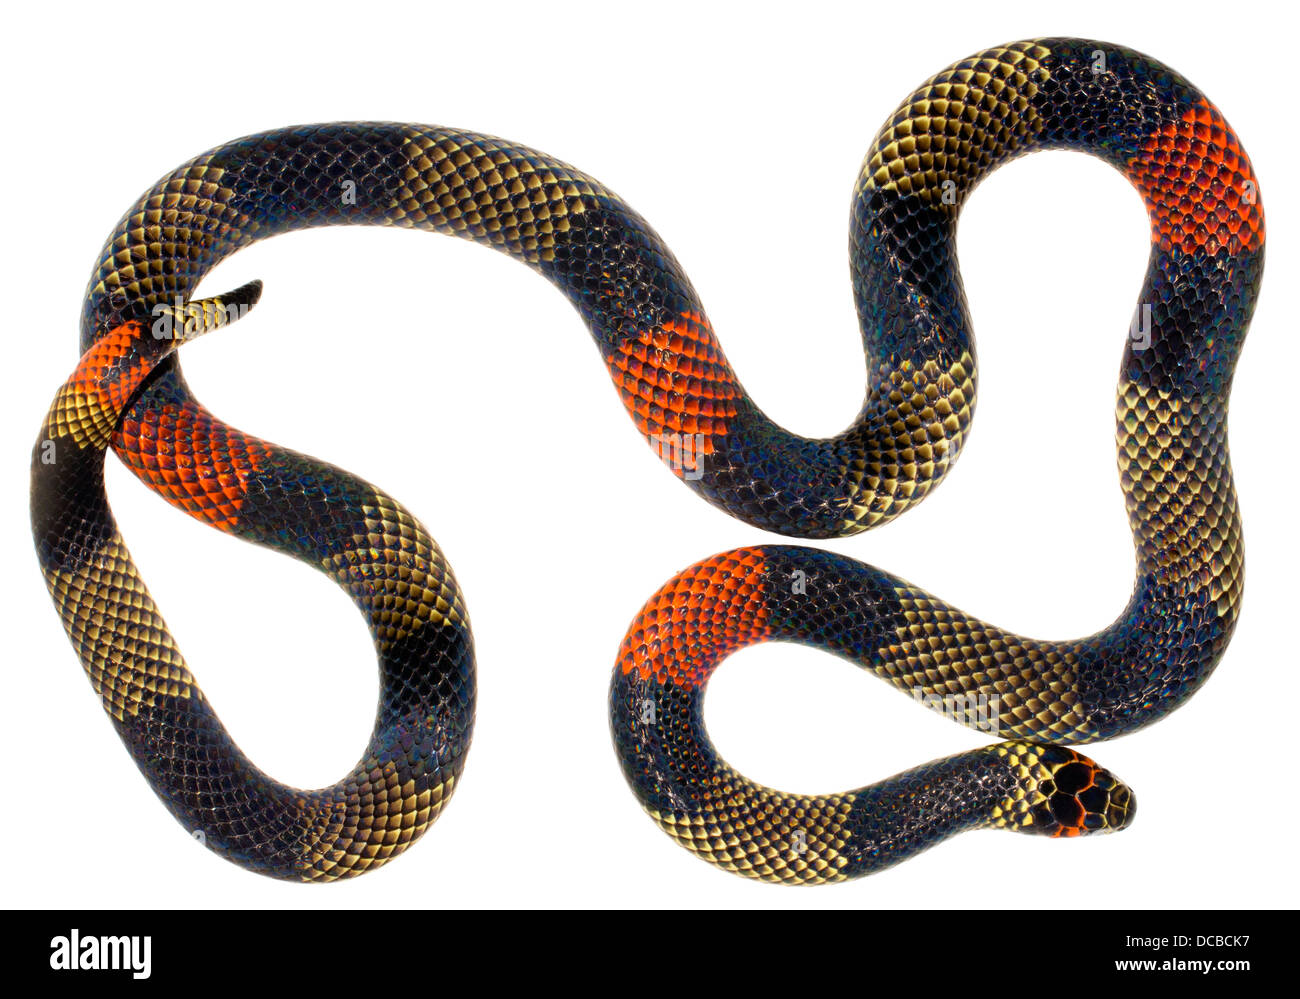 Coral Snake amazonien (Micrurus spixii obscurus). Un serpent venimeux de l'Amazonie équatorienne. Banque D'Images